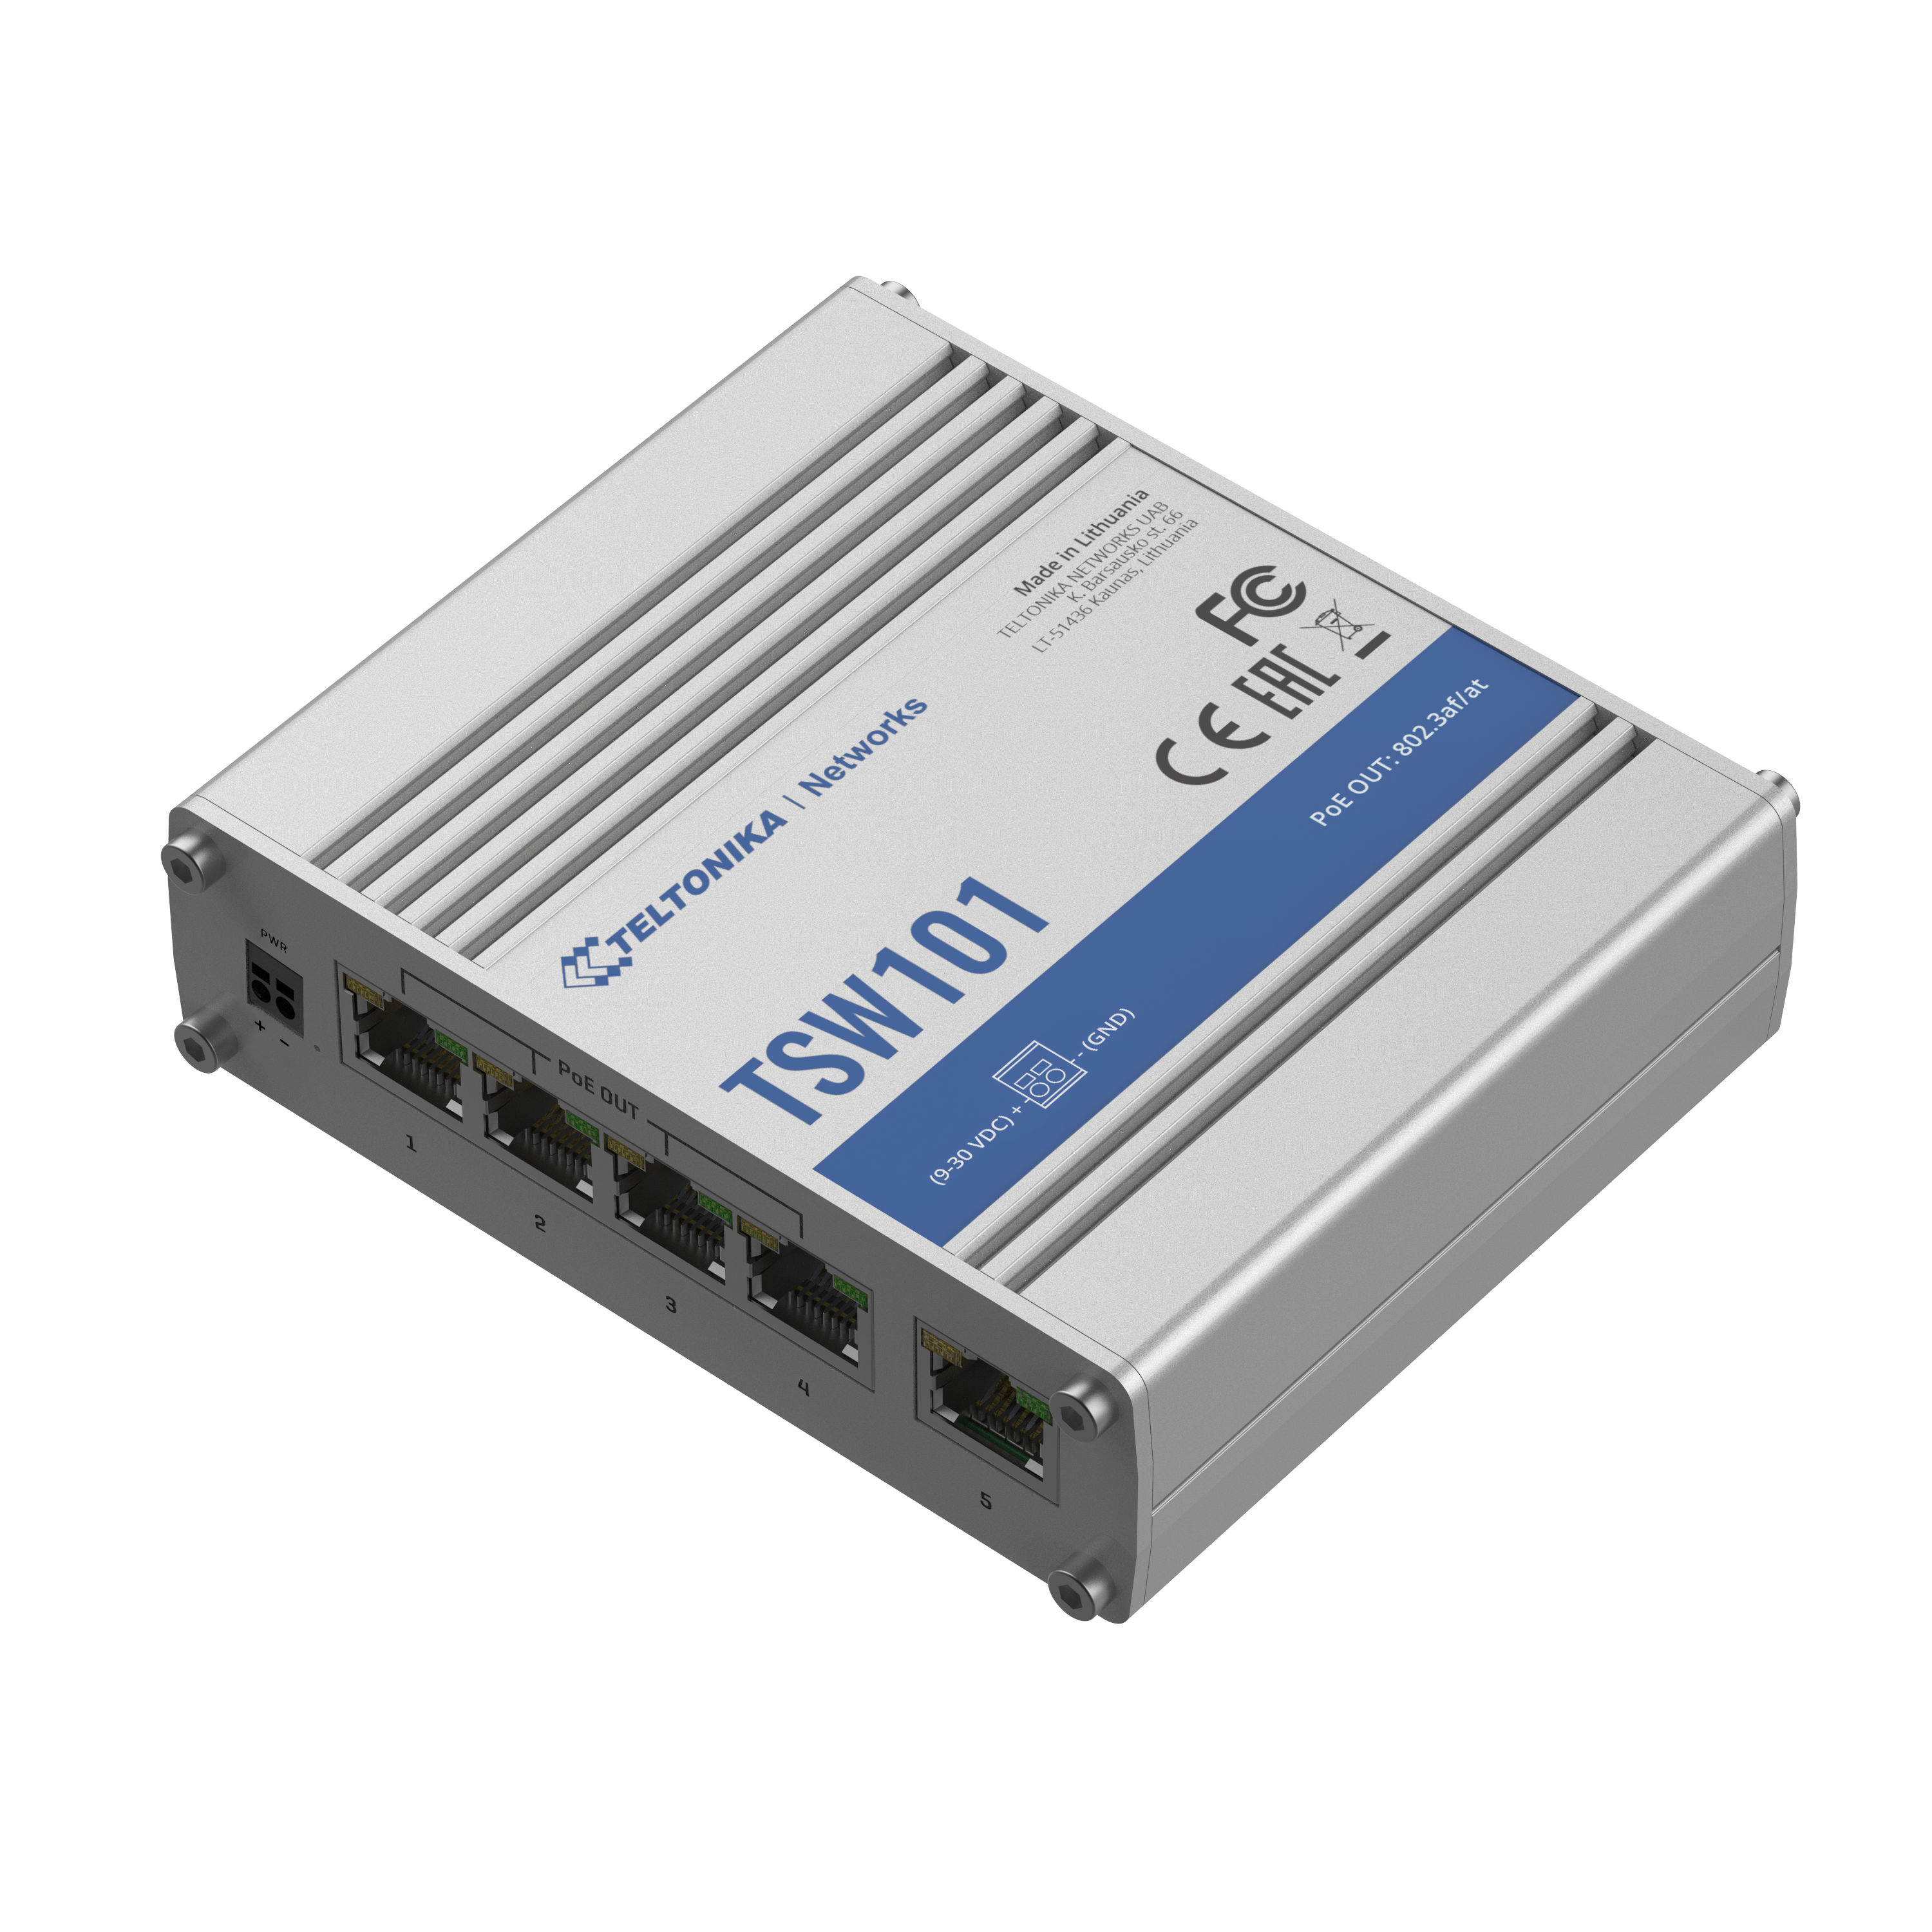 TSW101 - Teltonika Switches. 5 x Gigabit Ethernet ports